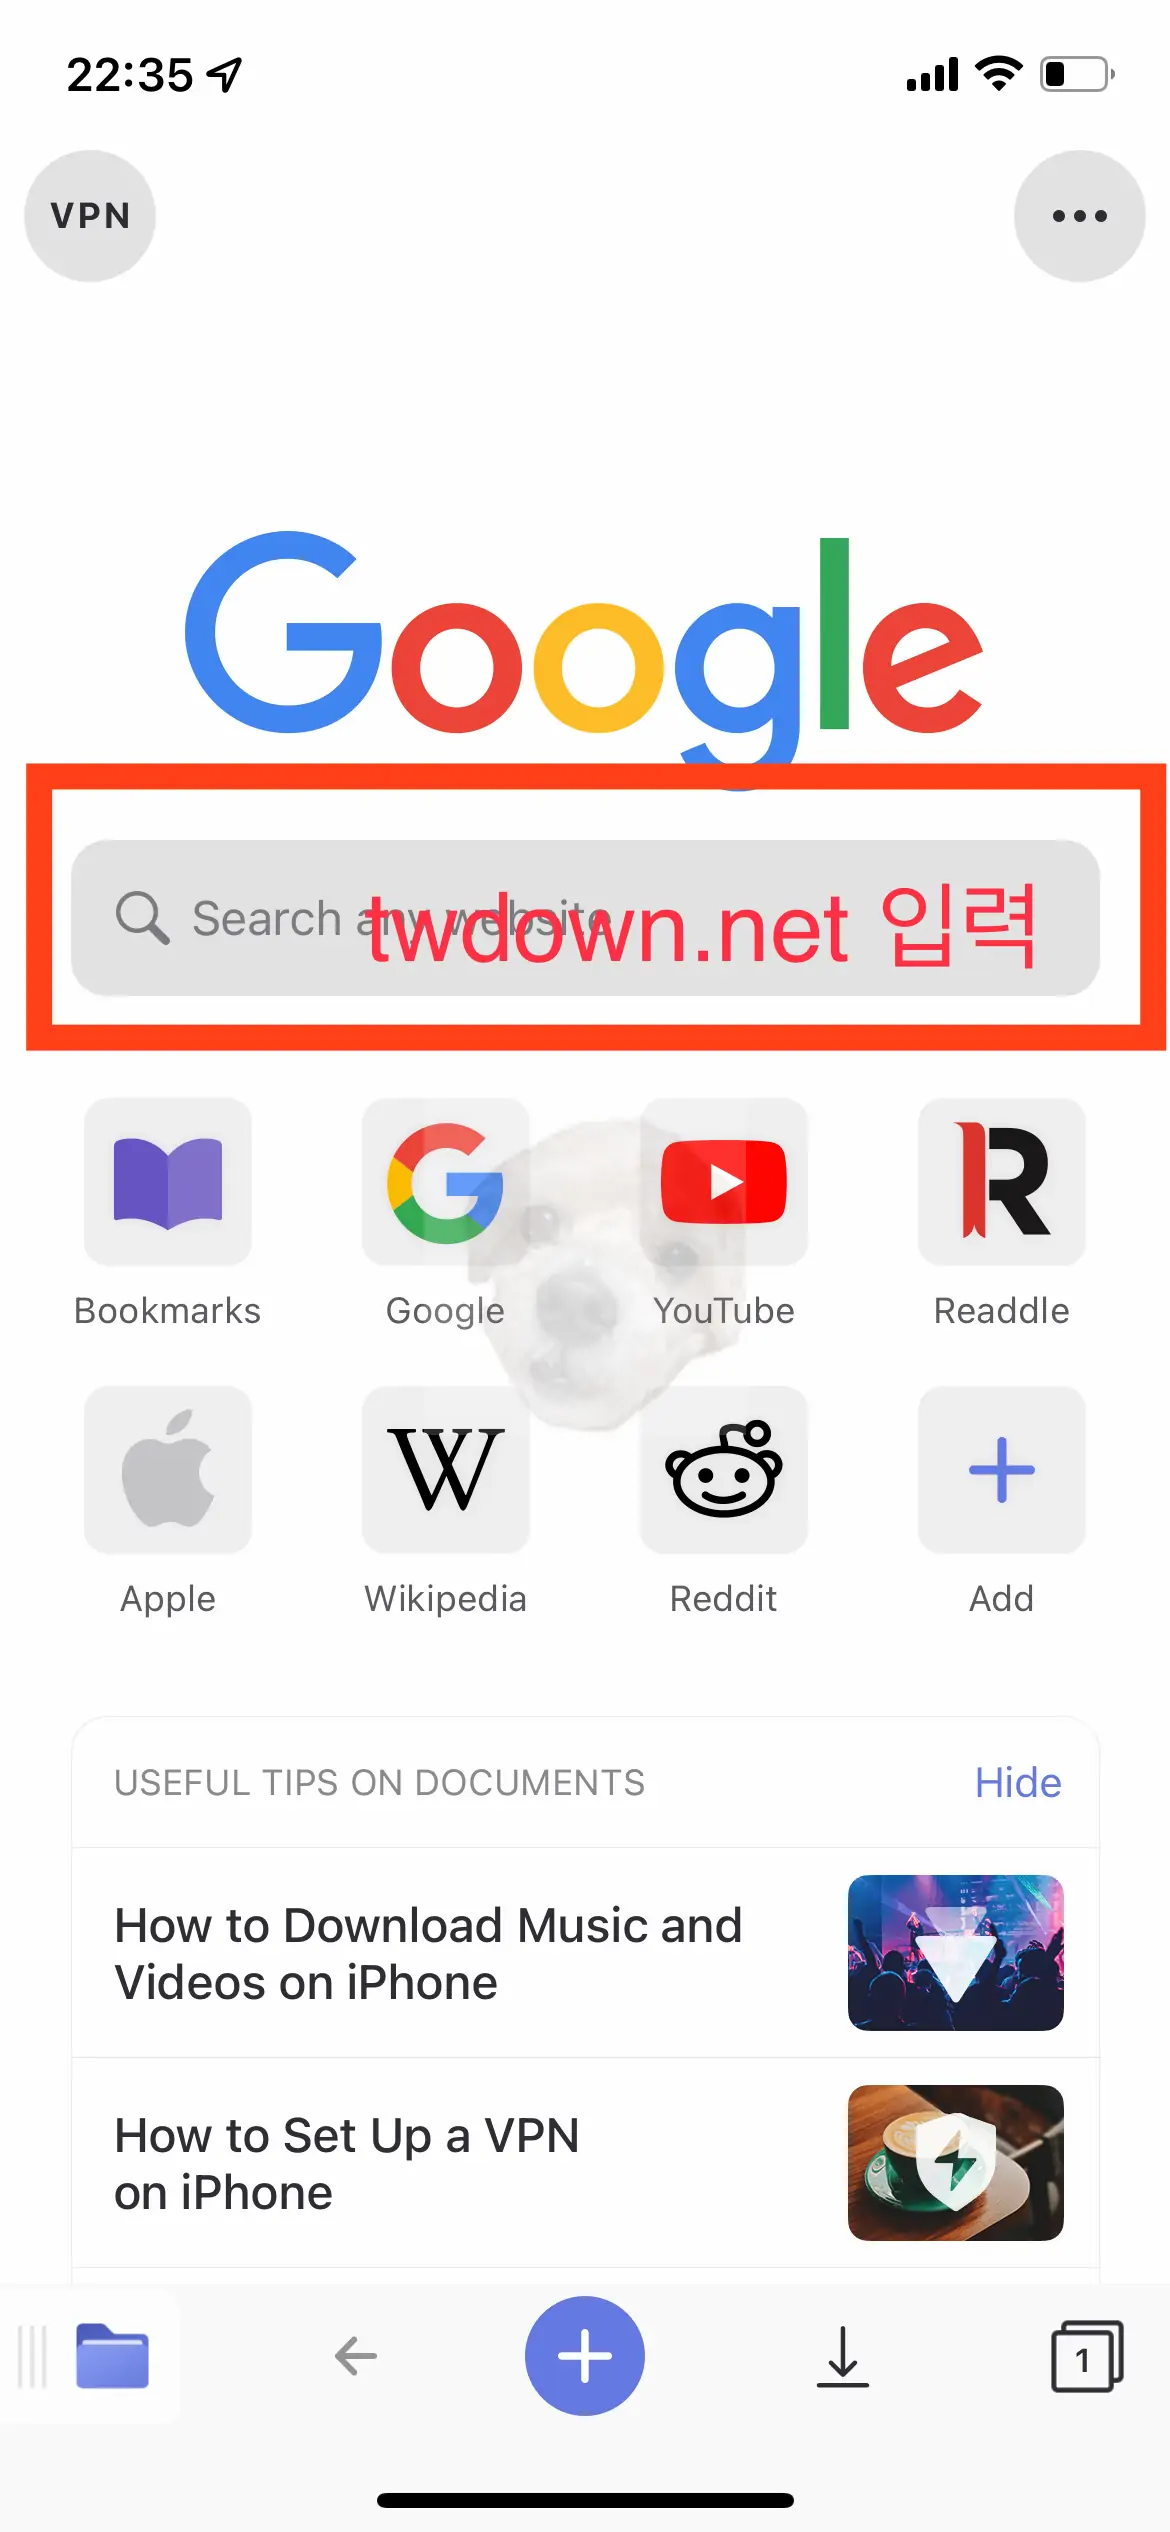 앱 내에서 Browser 터치 후 twdown.net 입력하고 접속